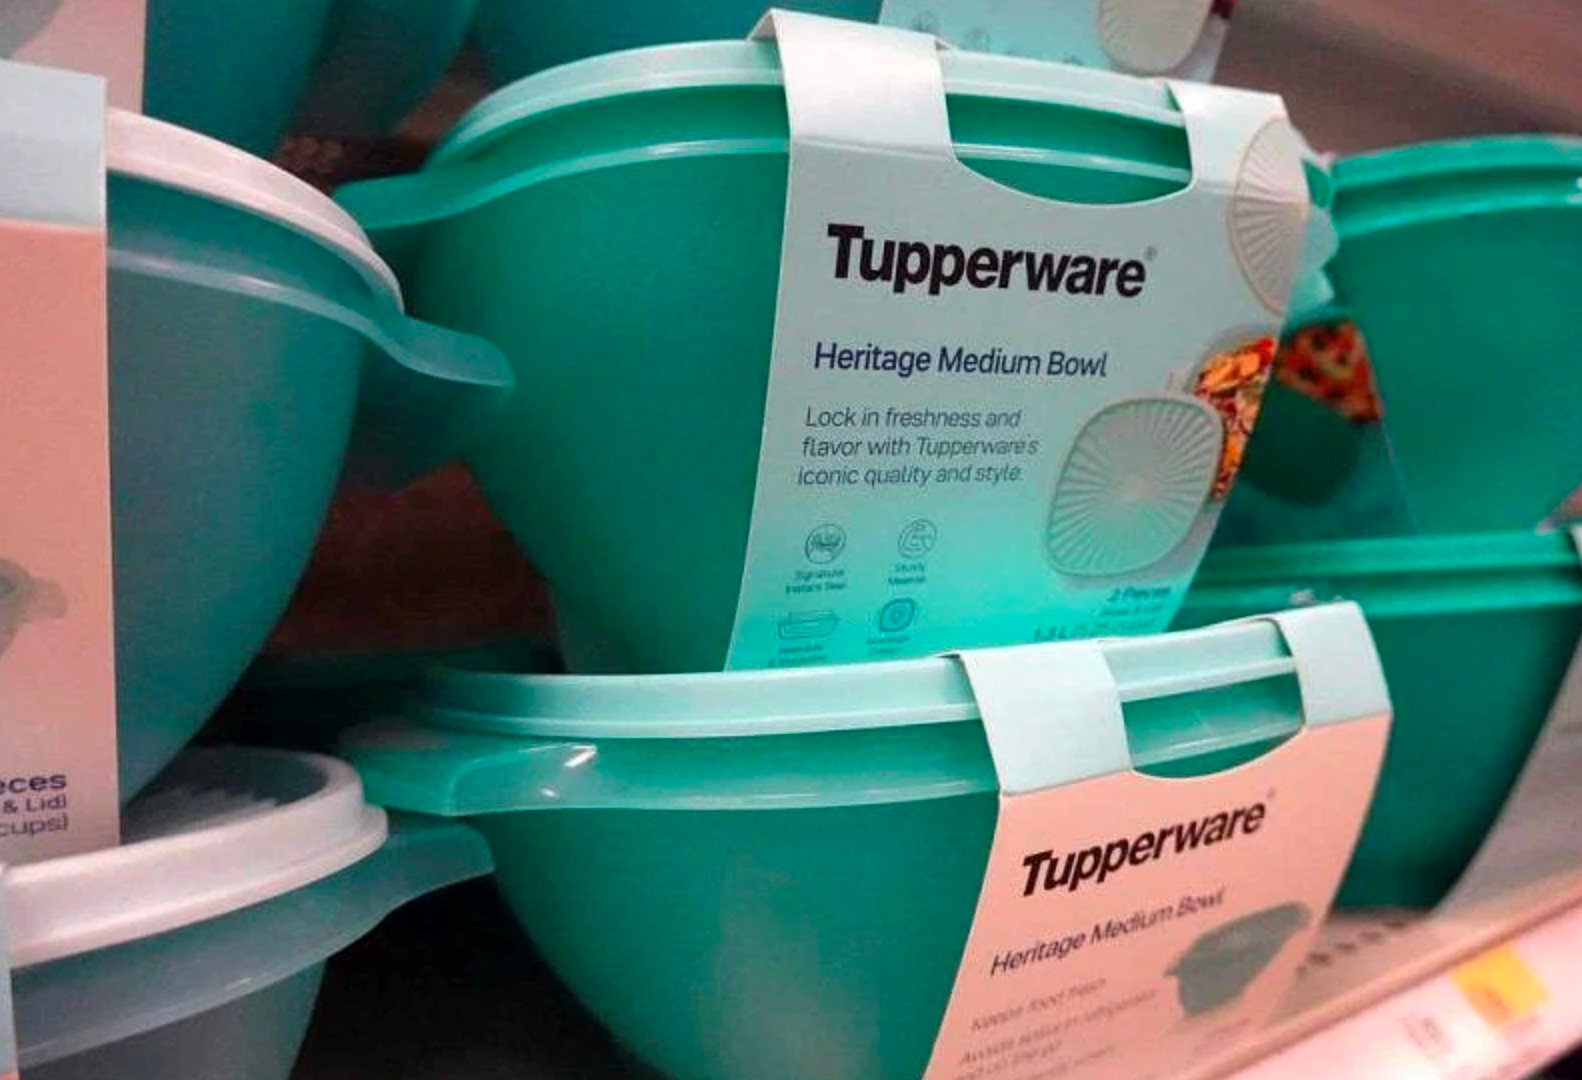 Nóng: Hãng gia dụng Tupperware sắp phá sản vì cạn tiền, cổ phiếu bốc hơi 90% chỉ trong 1 năm - Ảnh 2.